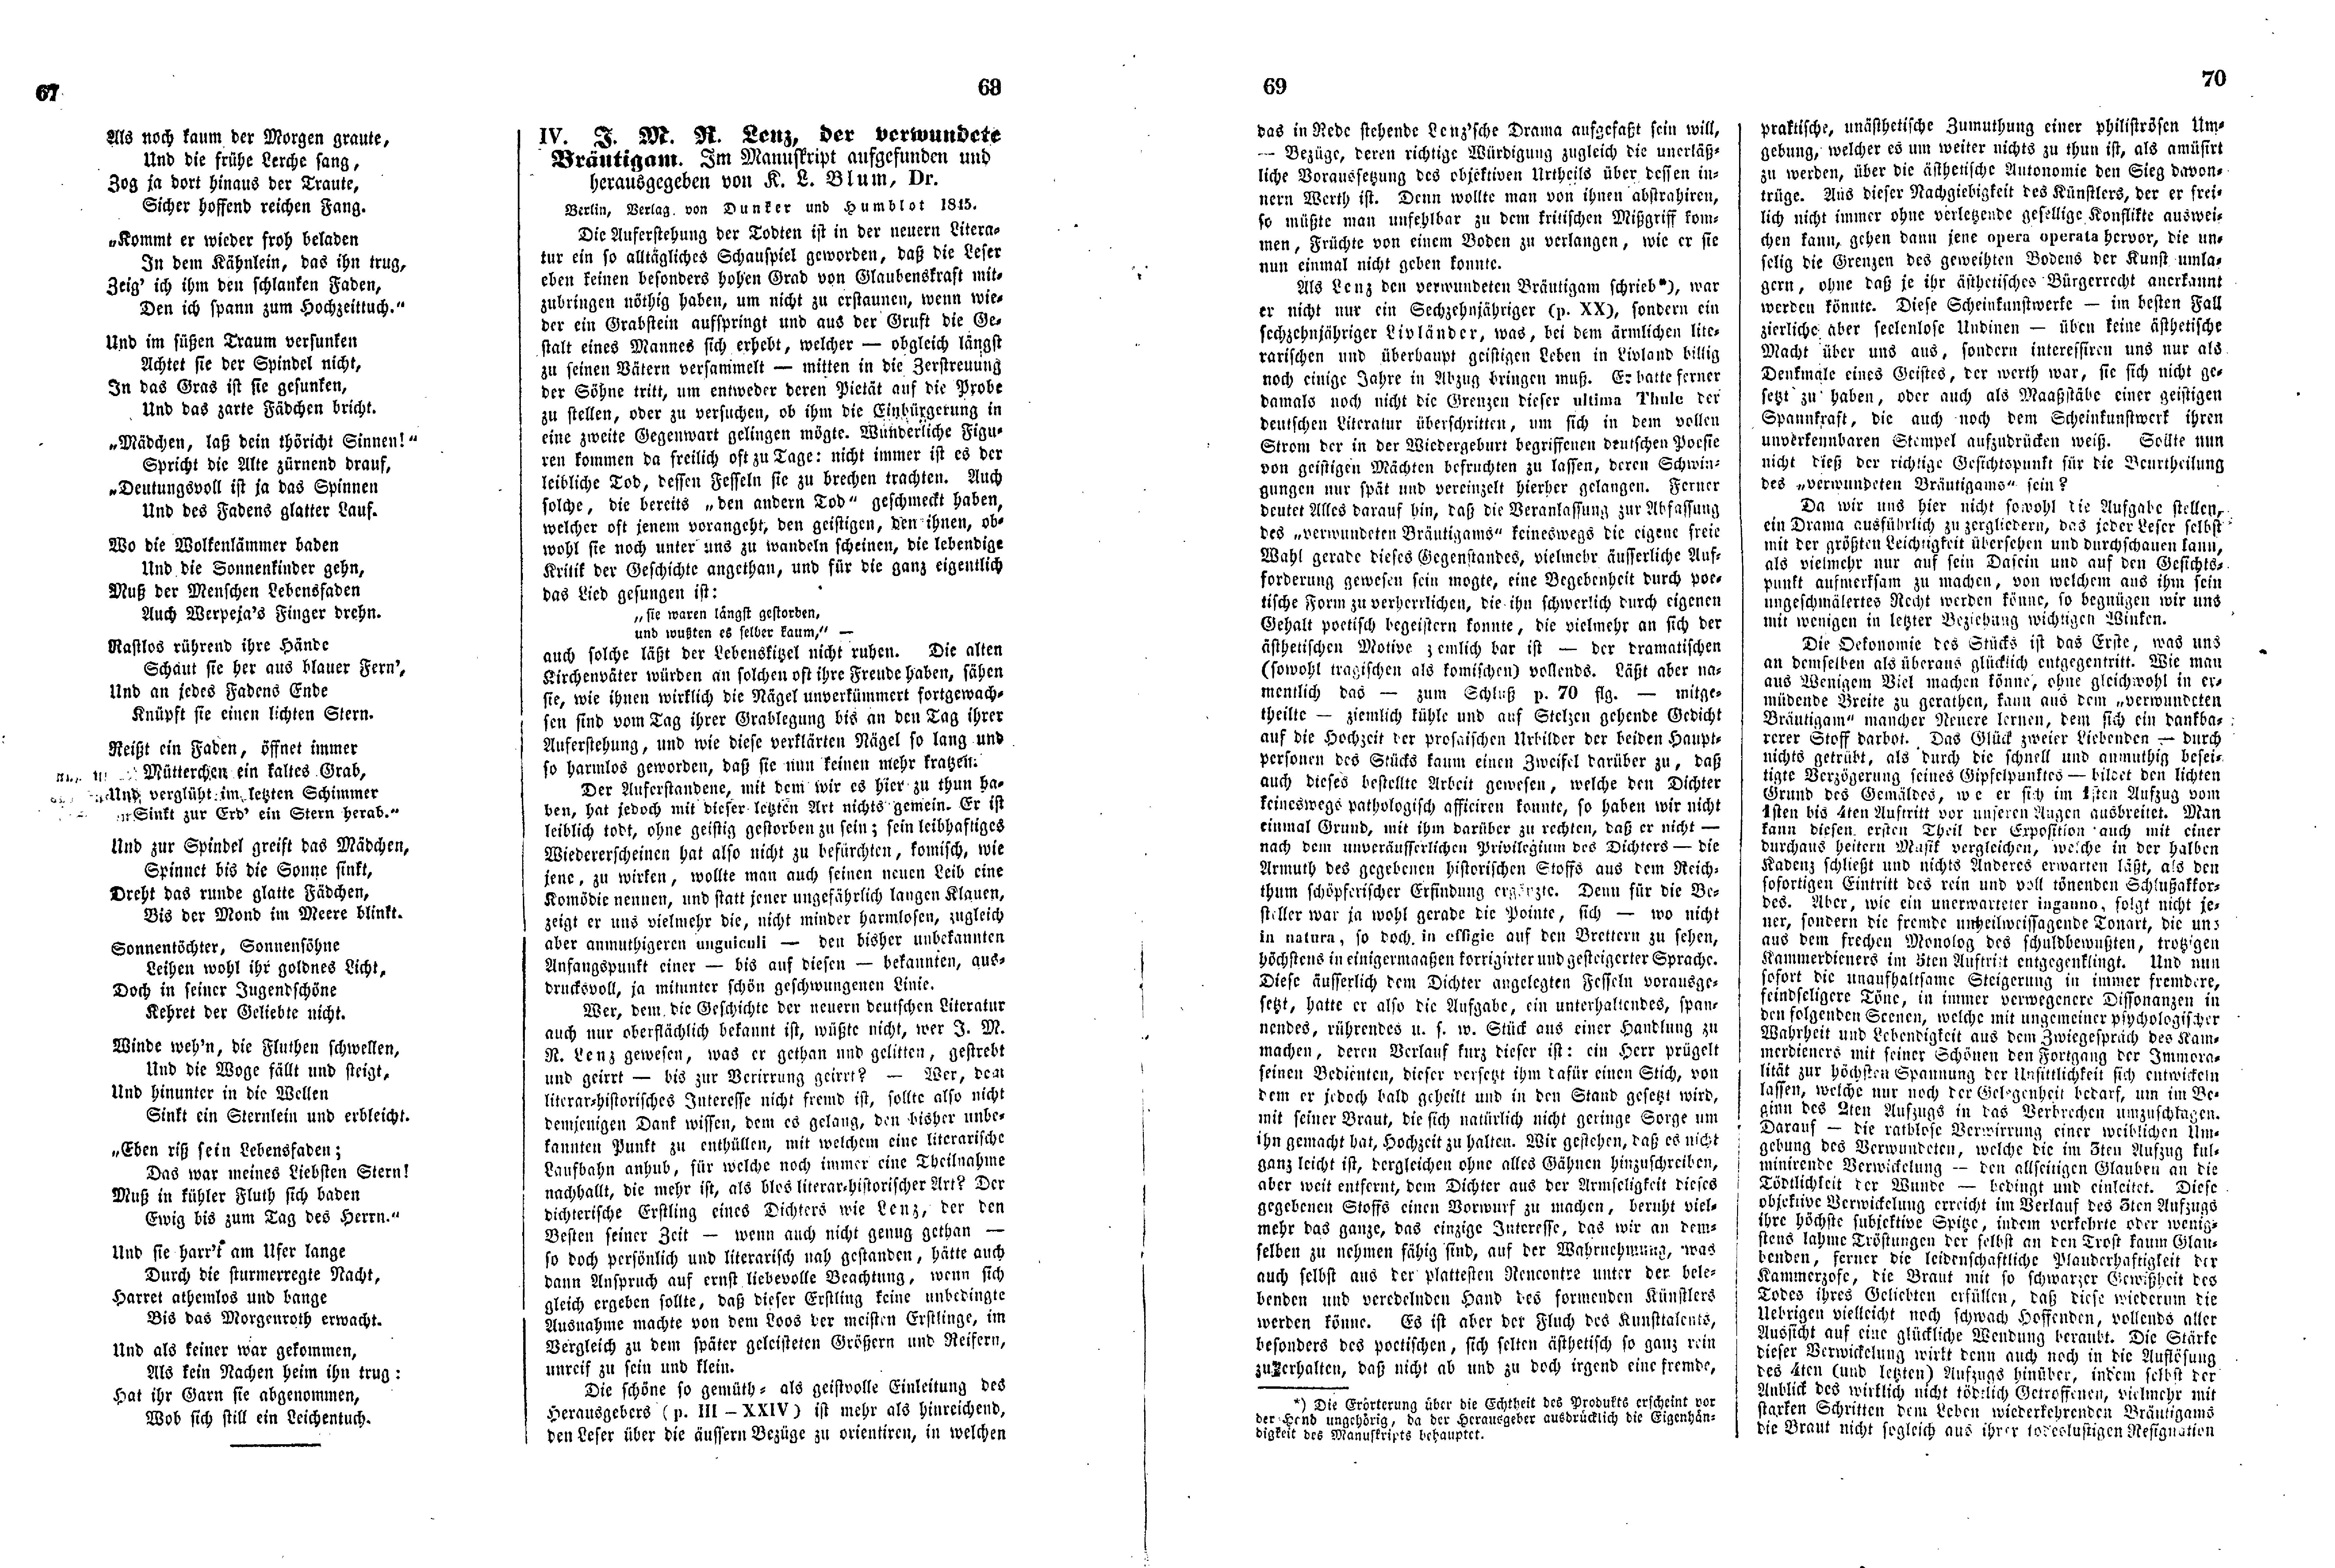 Das Inland [11] (1846) | 22. (67-70) Haupttext